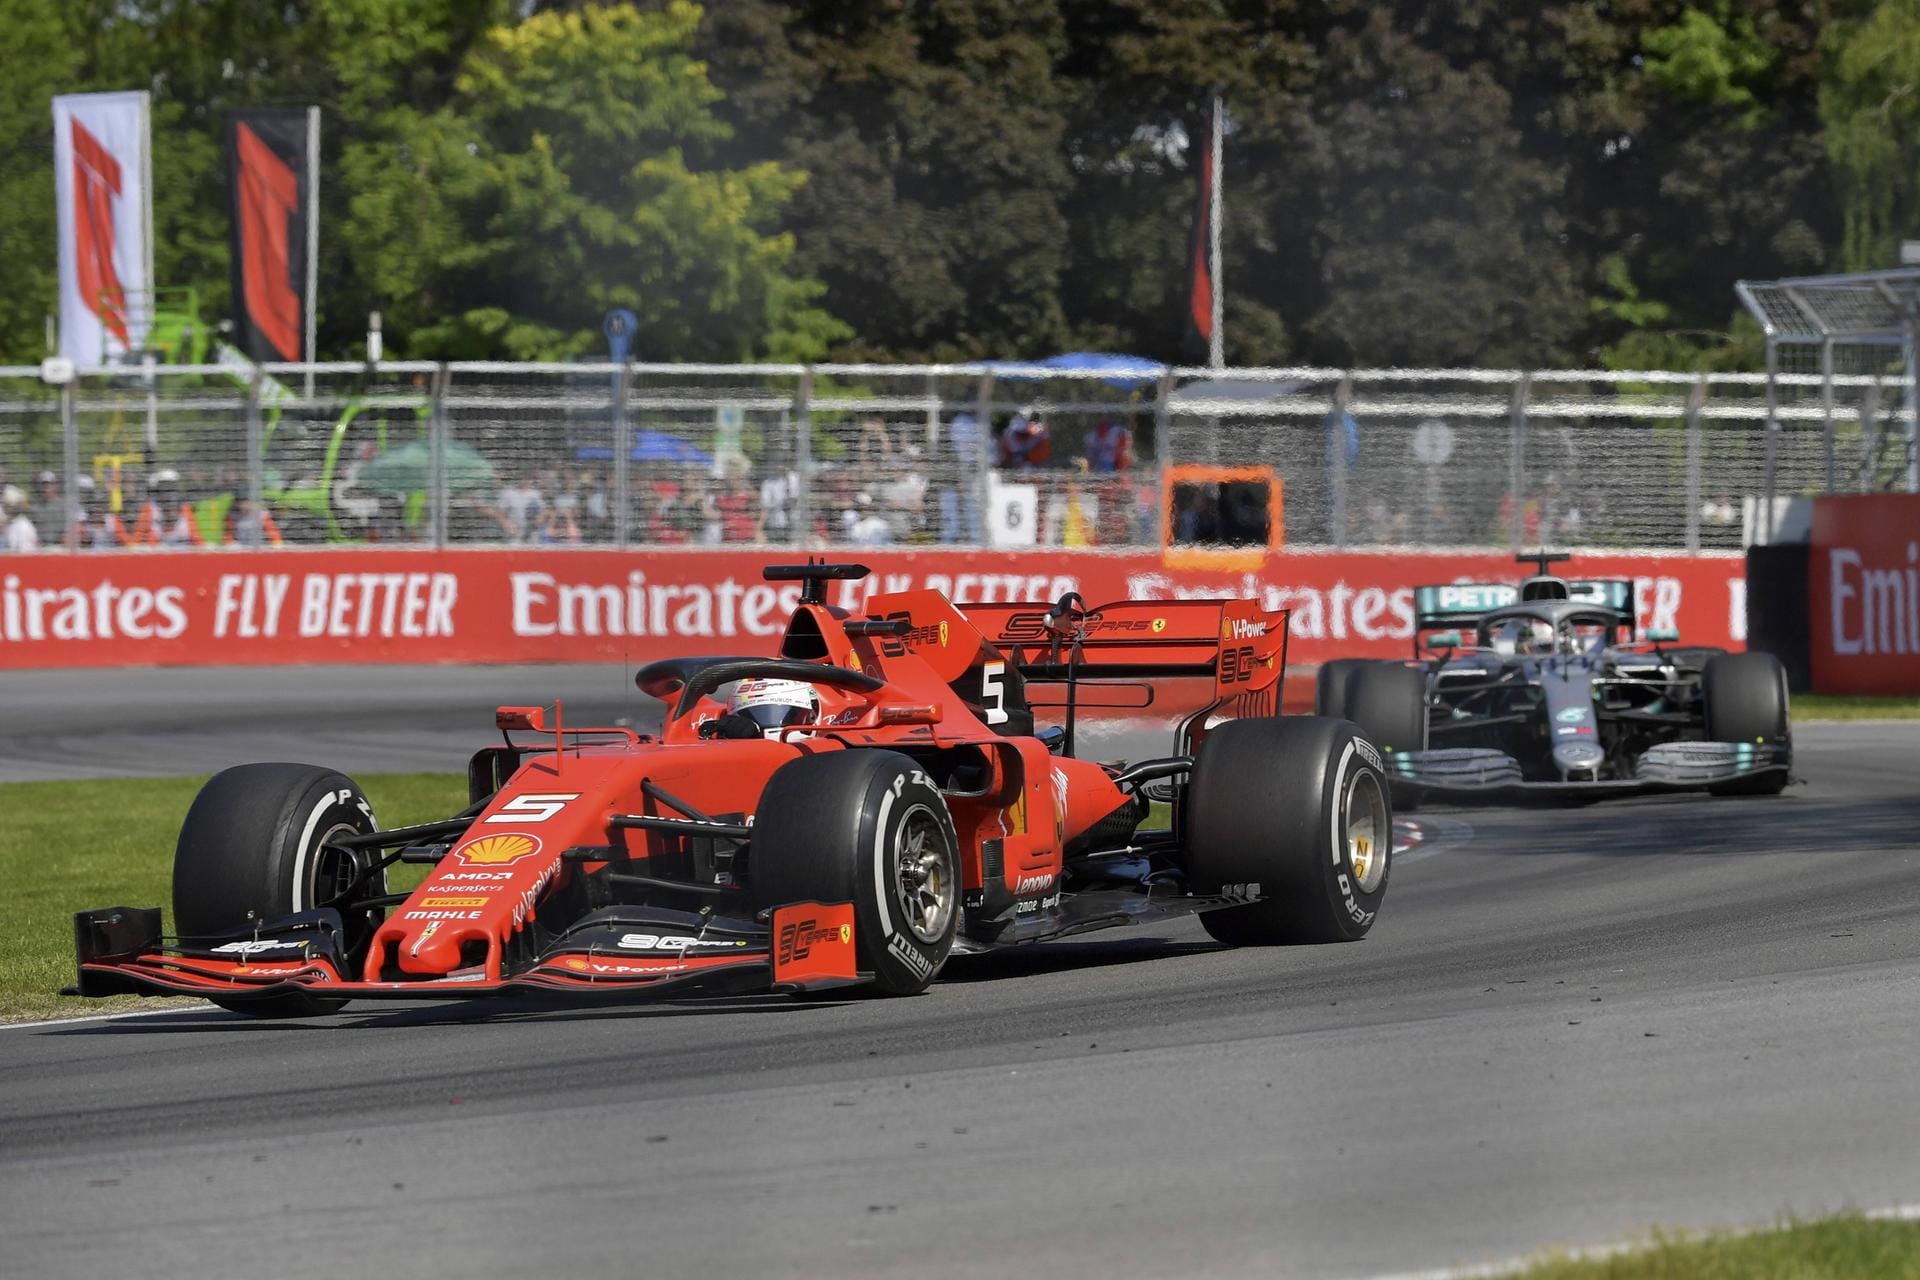 Corriere dello Sport: "Ferrari und Mercedes sind Protagonisten eines der umstrittensten Vorfälle in der Geschichte der F1. Niemand hat in Kanada wirklich geglänzt. Nicht Sebastian Vettel, nicht Hamilton, nicht die anderen Piloten. Lob für Vettel für seine Revolte gegen das System. In seiner Wut wandelt er die Feier in einen Protest um."